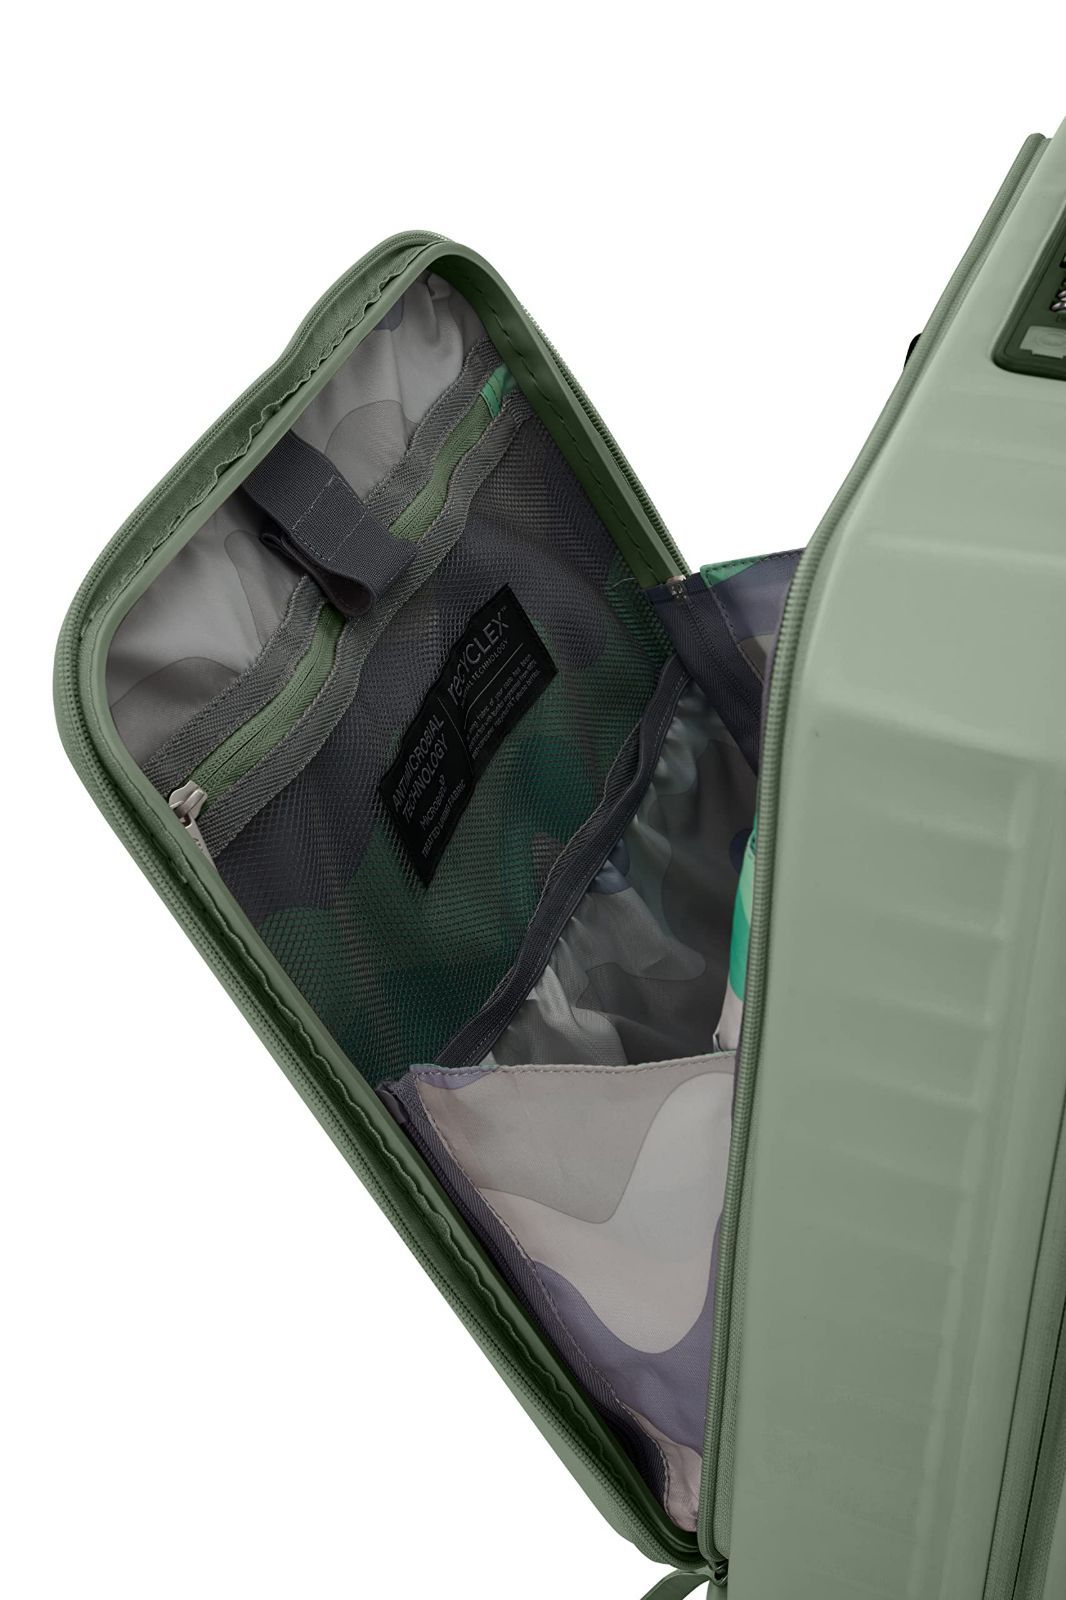 アメリカンツーリスター] スーツケース キャリーケース フロンテック FRONTEC スピナー54/19 38L 54cm 3.1kg エキス 